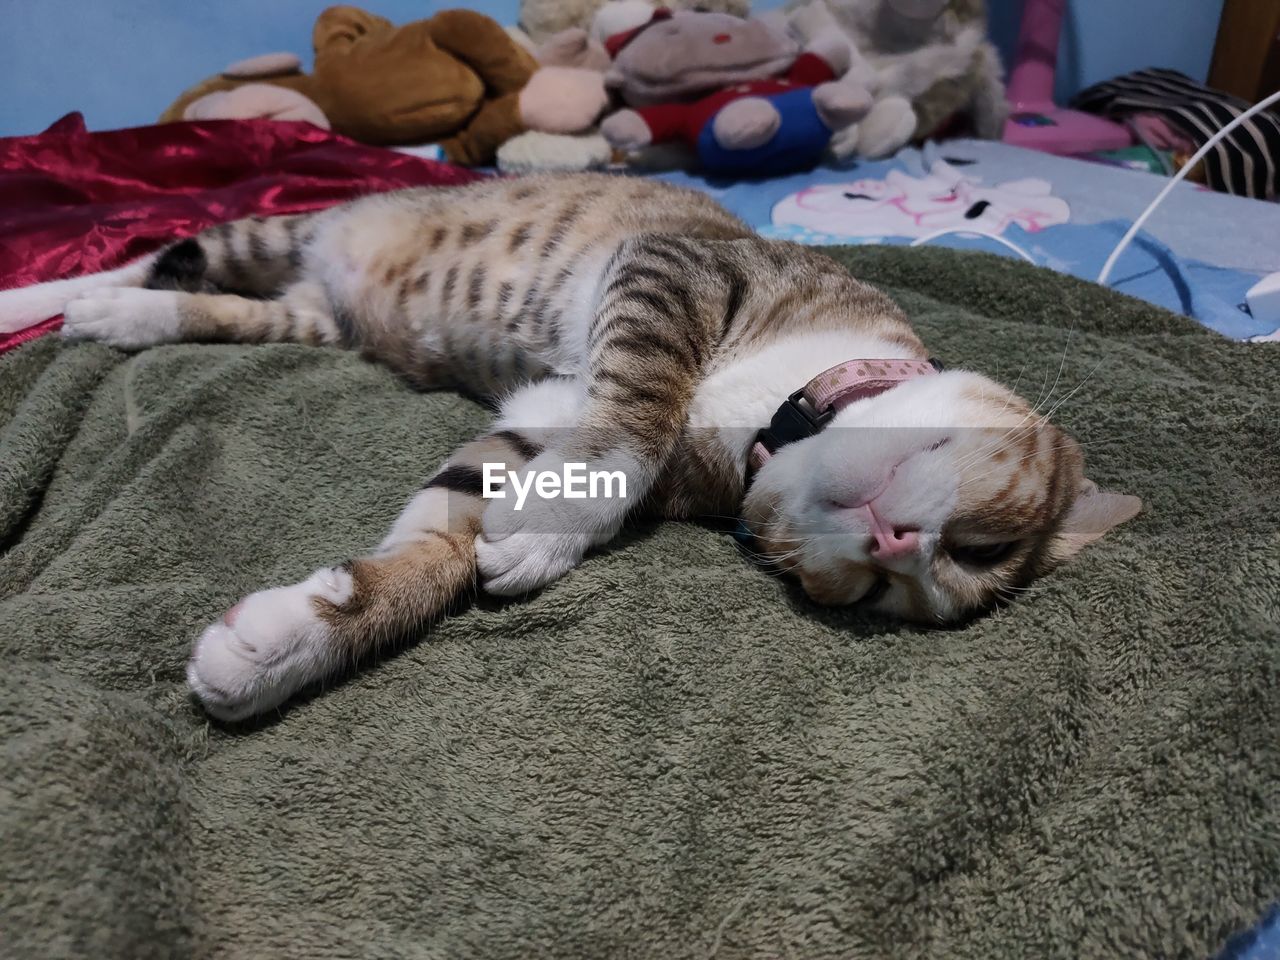 CAT SLEEPING IN BED